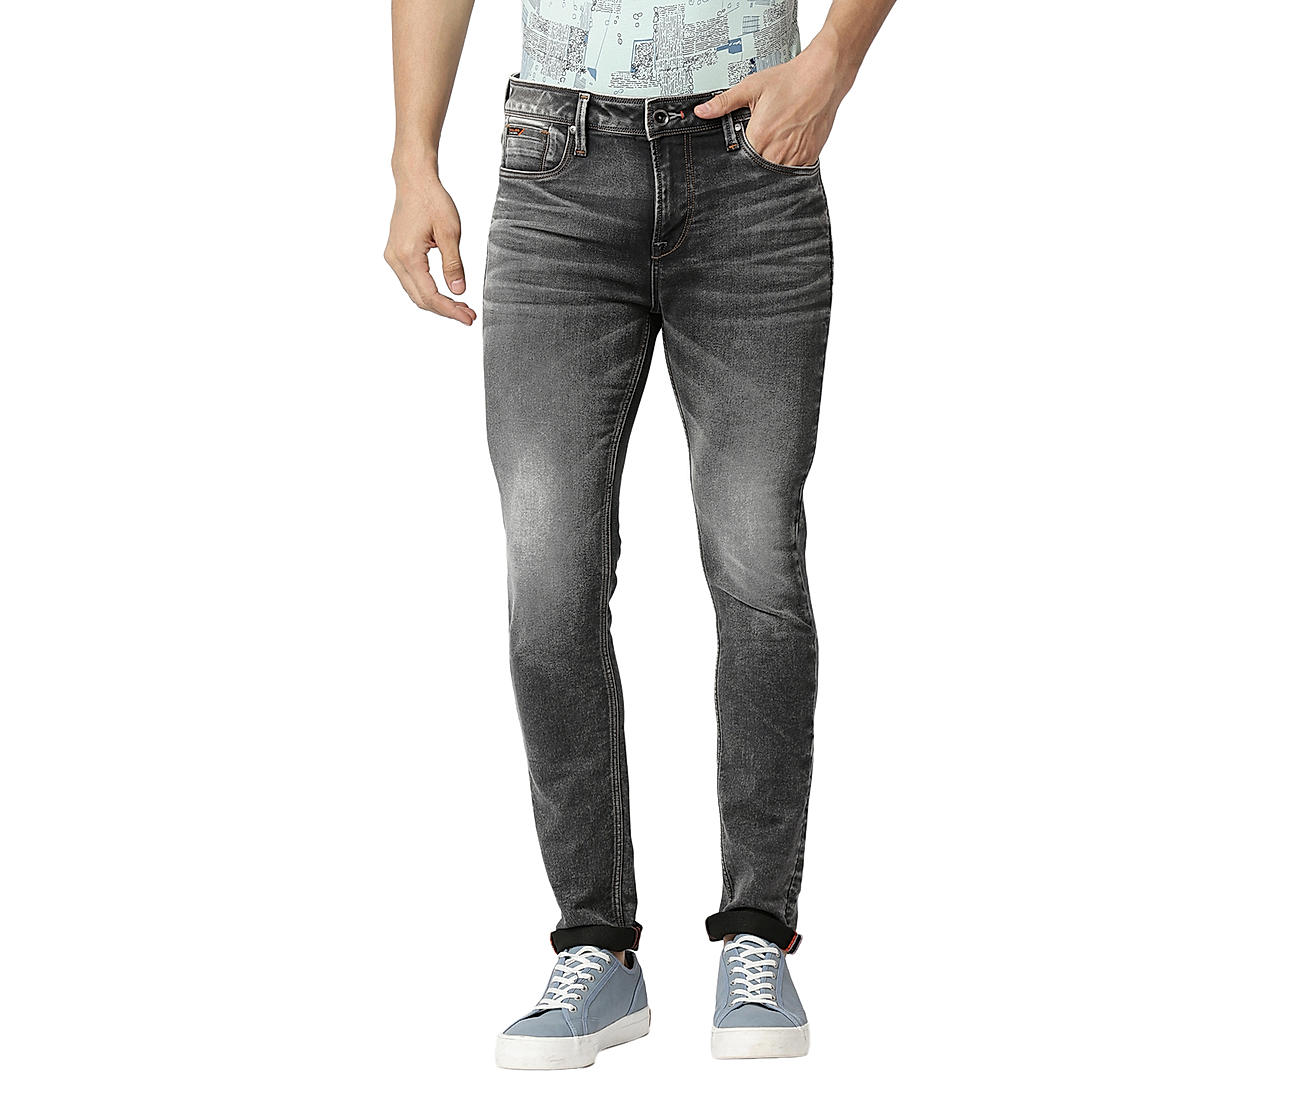 Buy Black Solid Ankle Fit Jeans for Men Online at Killer Jeans